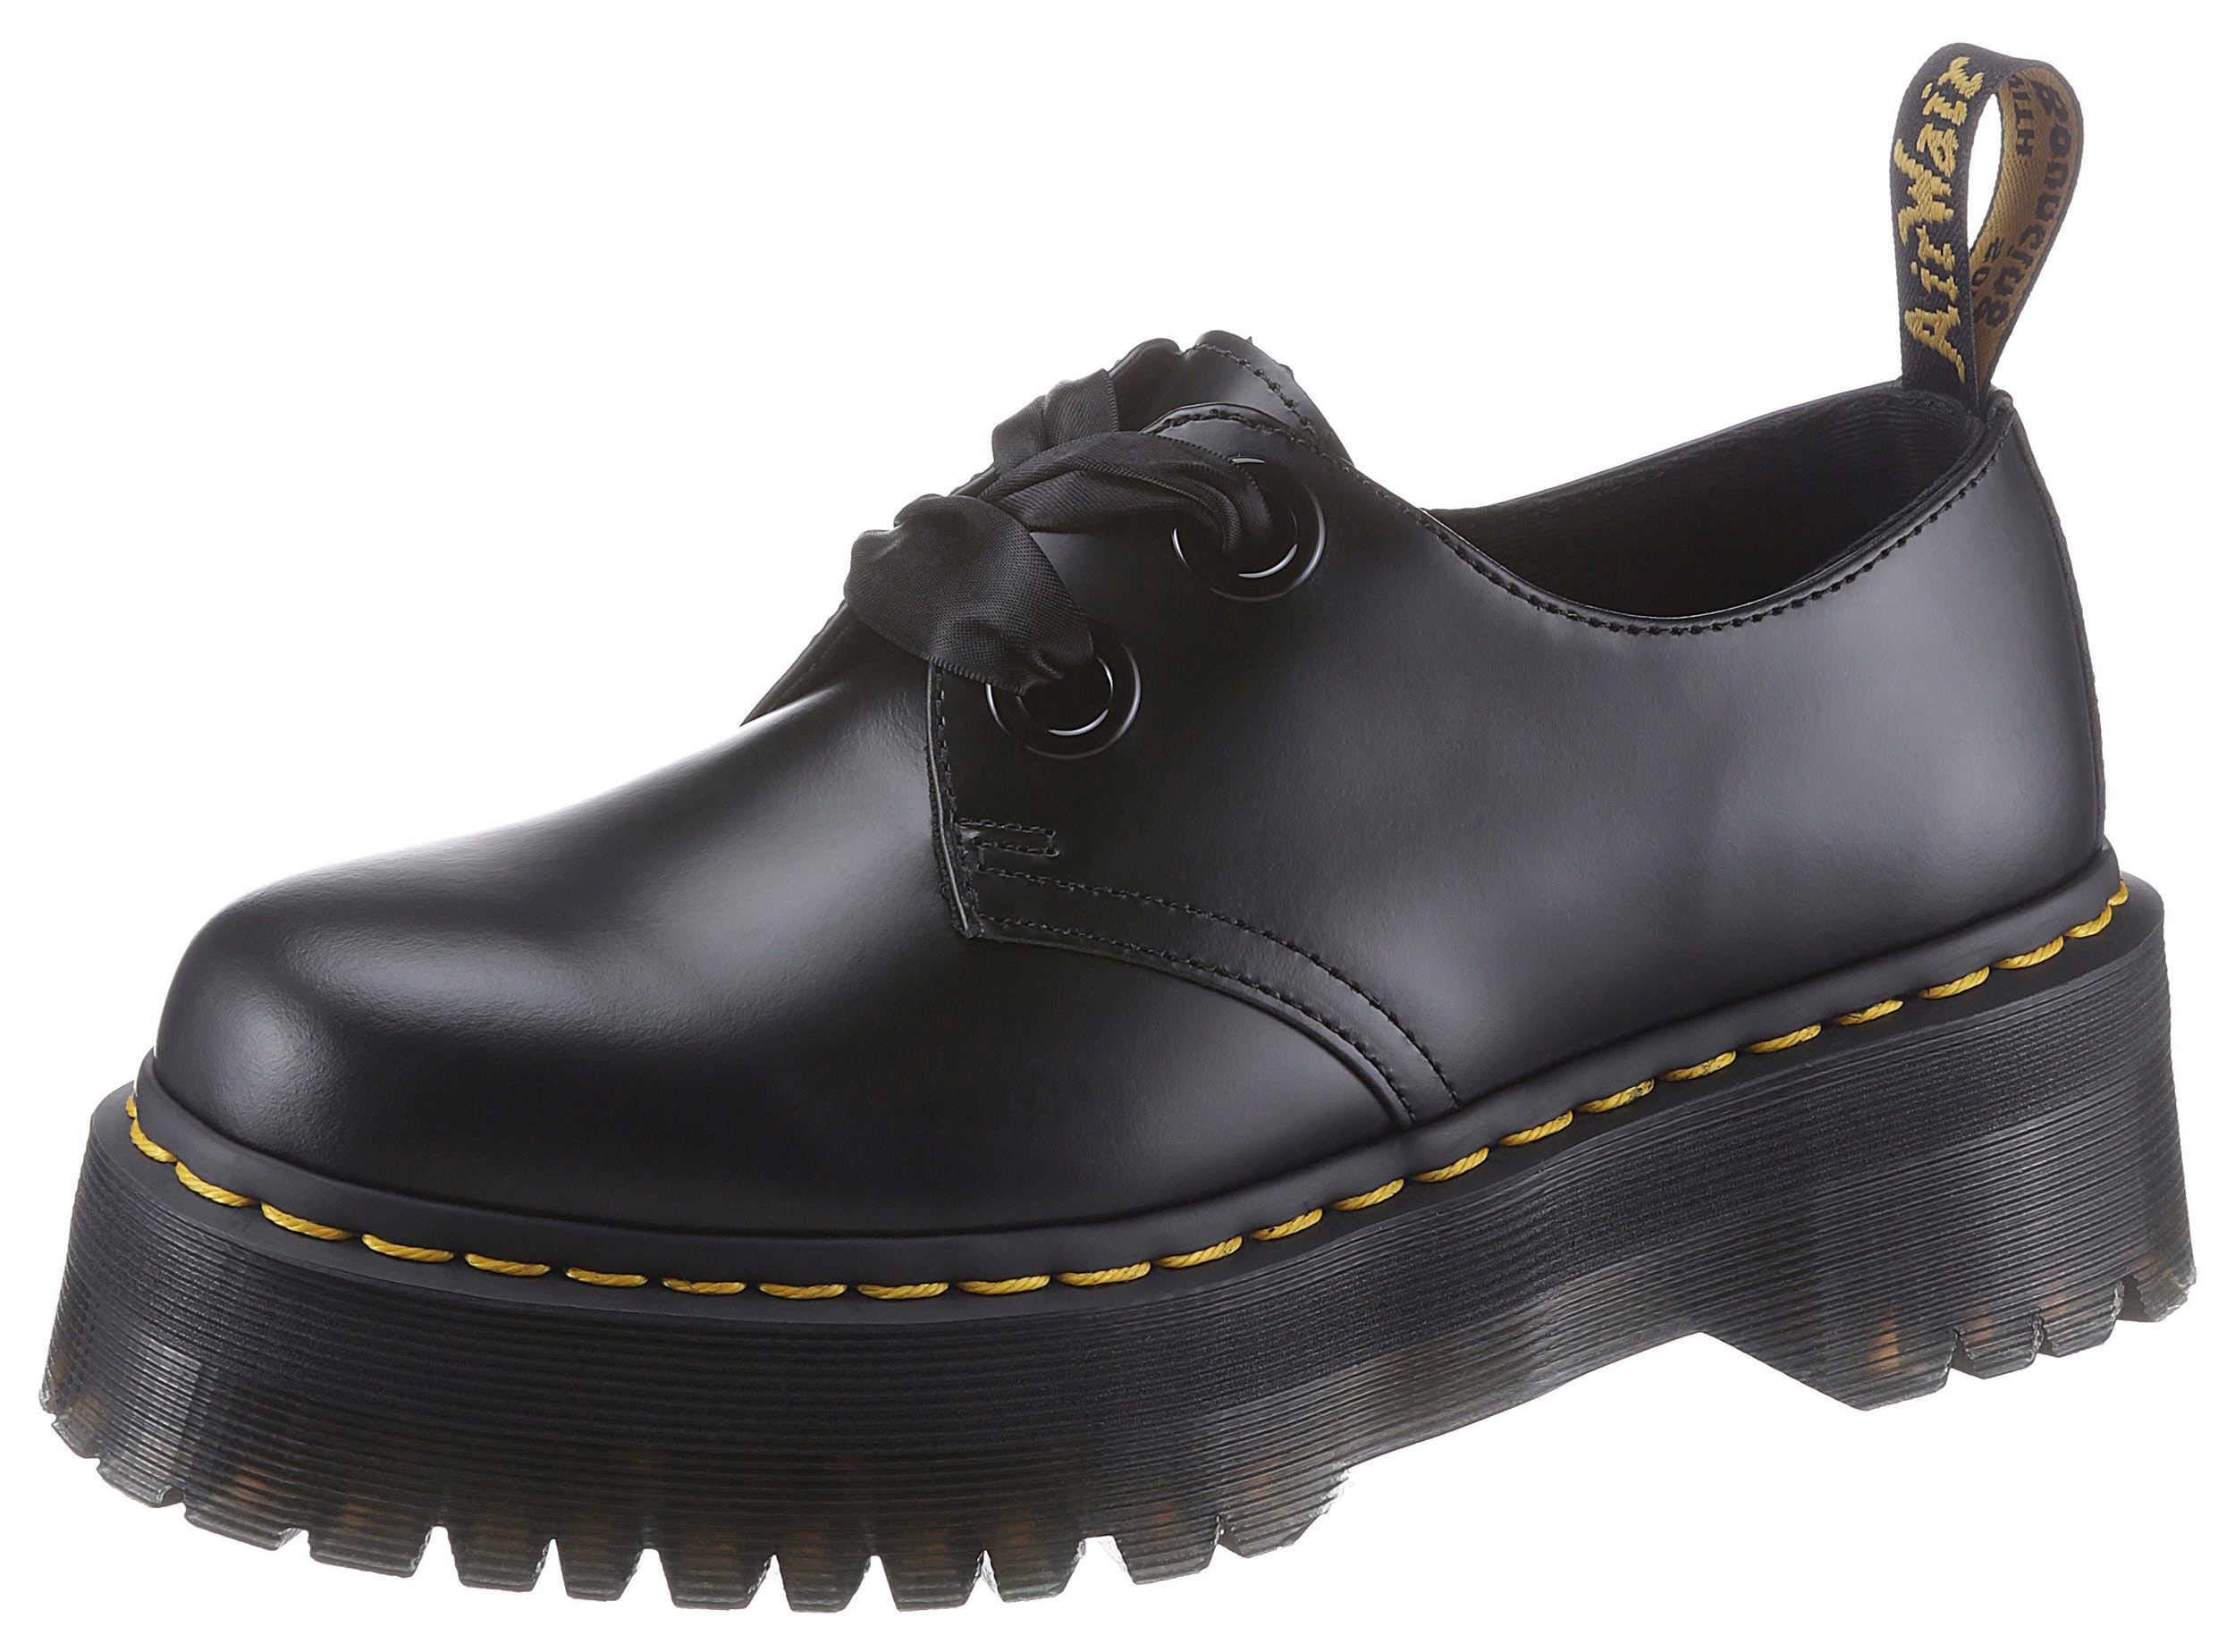 Dr. Martens Damen Half Shoes, Black, 41 EU